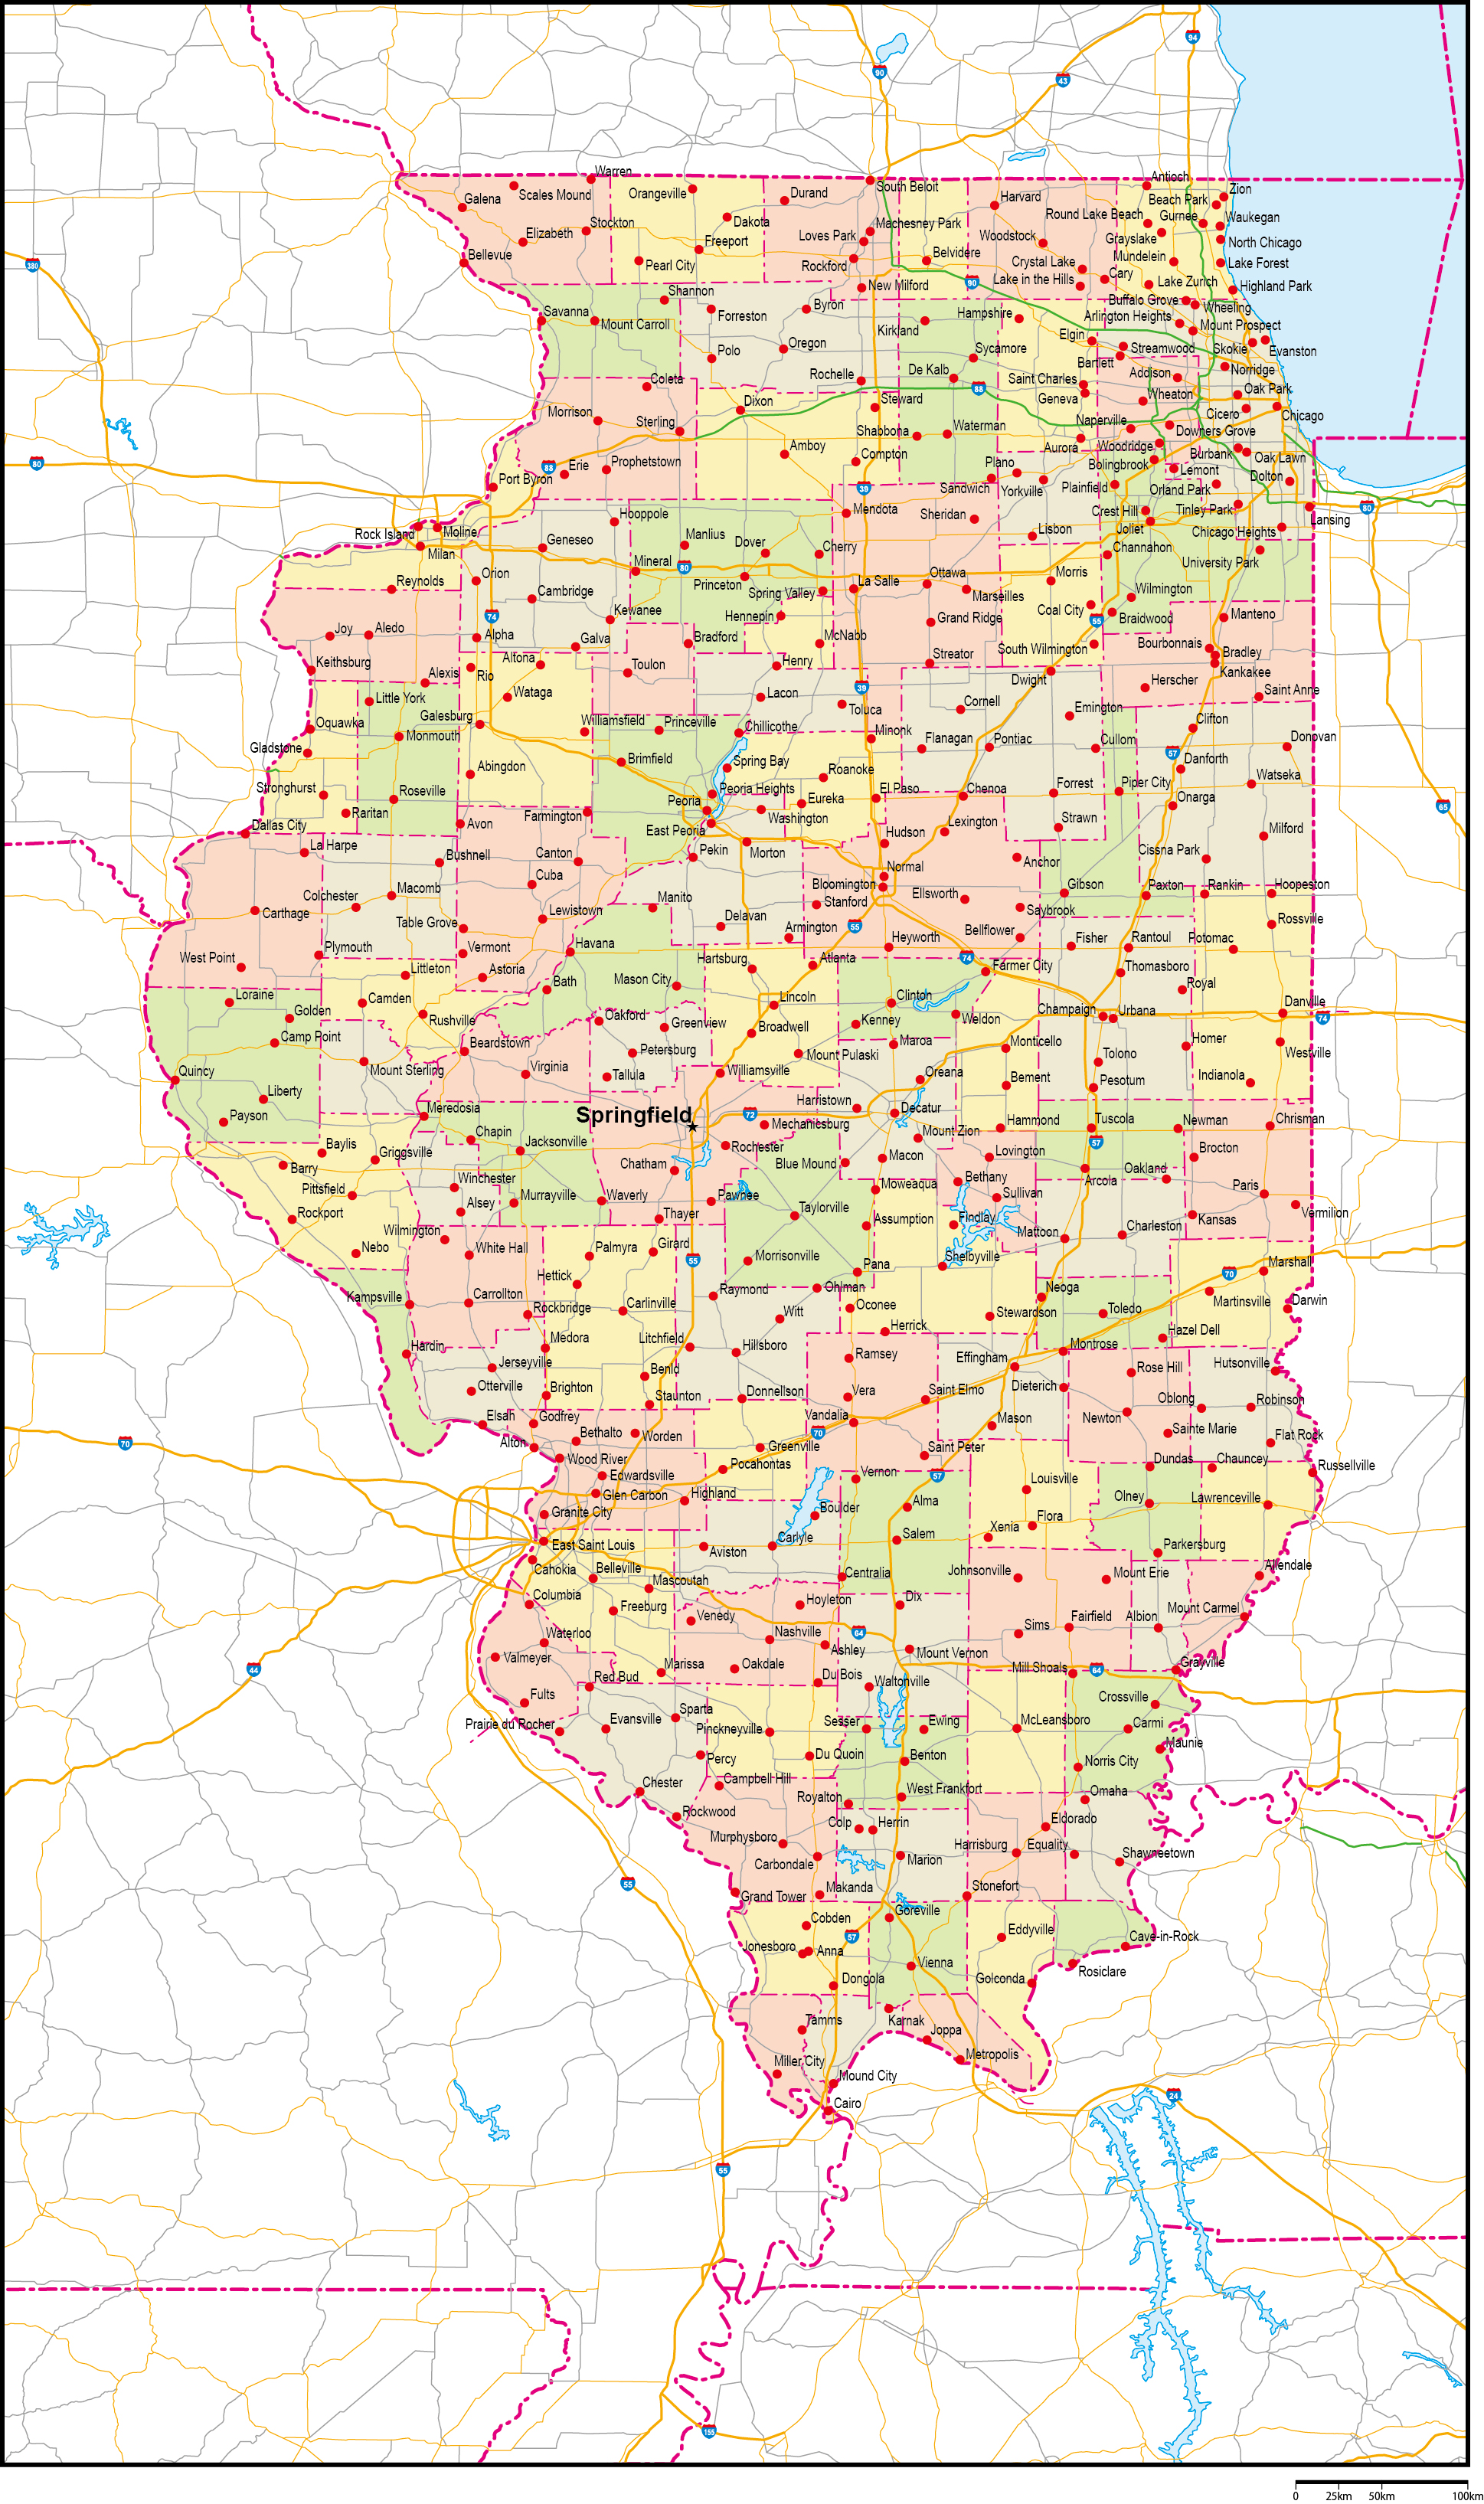 イリノイ州郡色分け地図州都・主な都市・道路あり(英語)フリーデータの画像